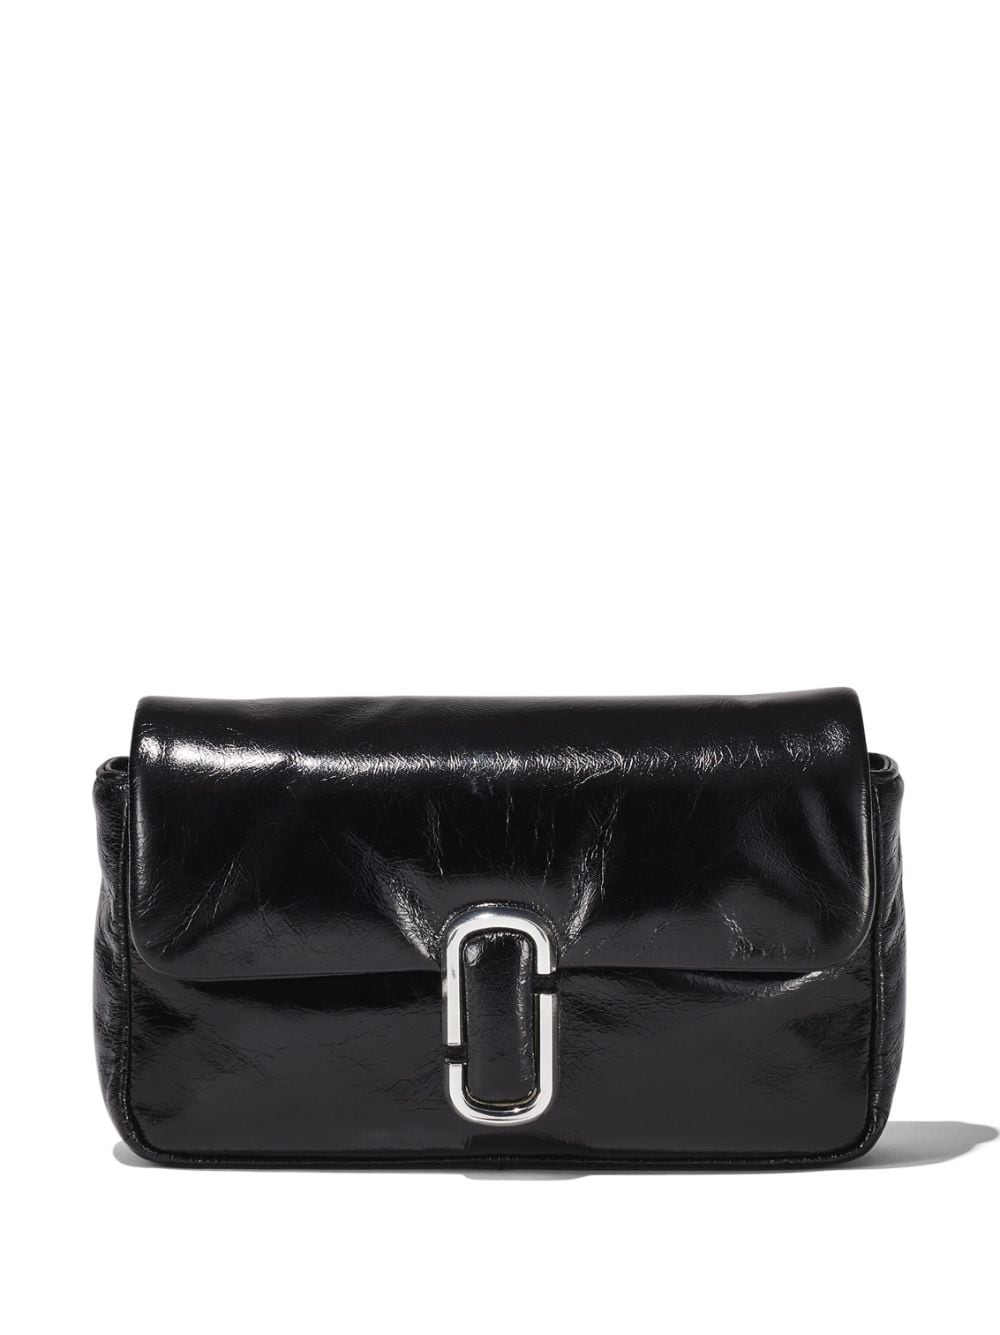 Marc Jacobs The Mini Cushion Bag - Farfetch